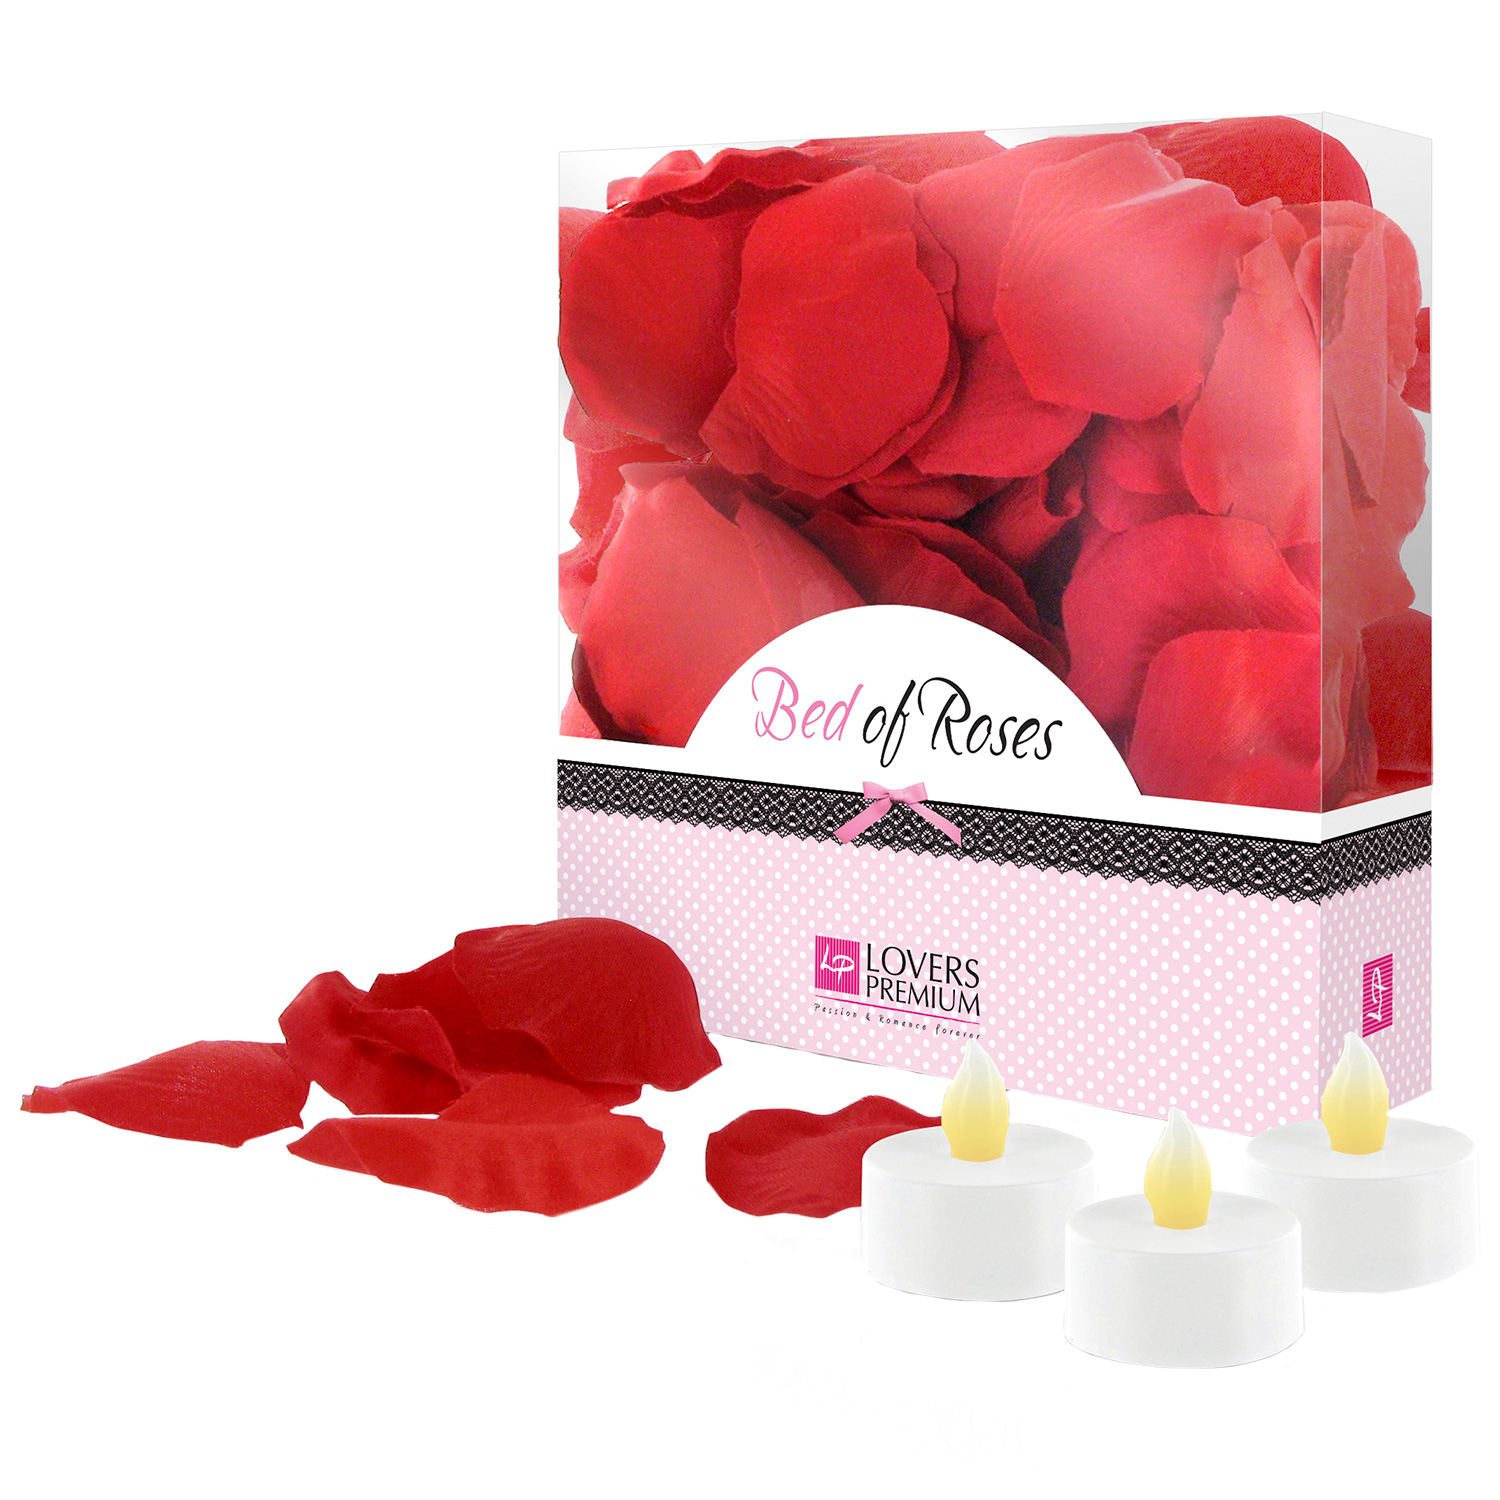 Lovers Premium Rose Petals Rosblad - Lovers Premium